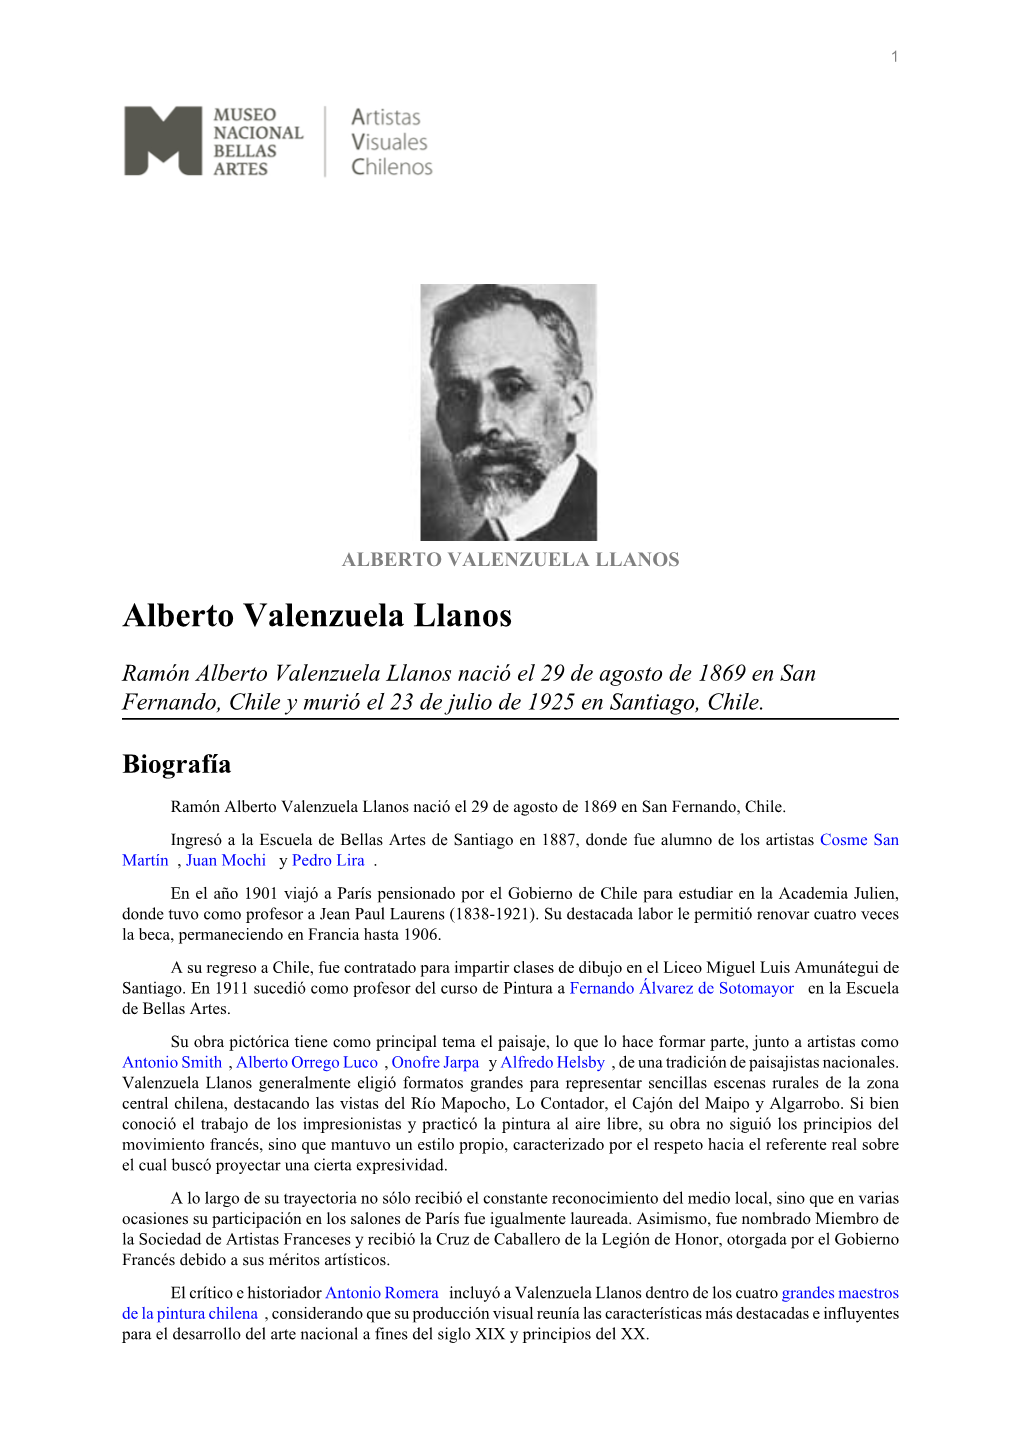 ALBERTO VALENZUELA LLANOS Alberto Valenzuela Llanos